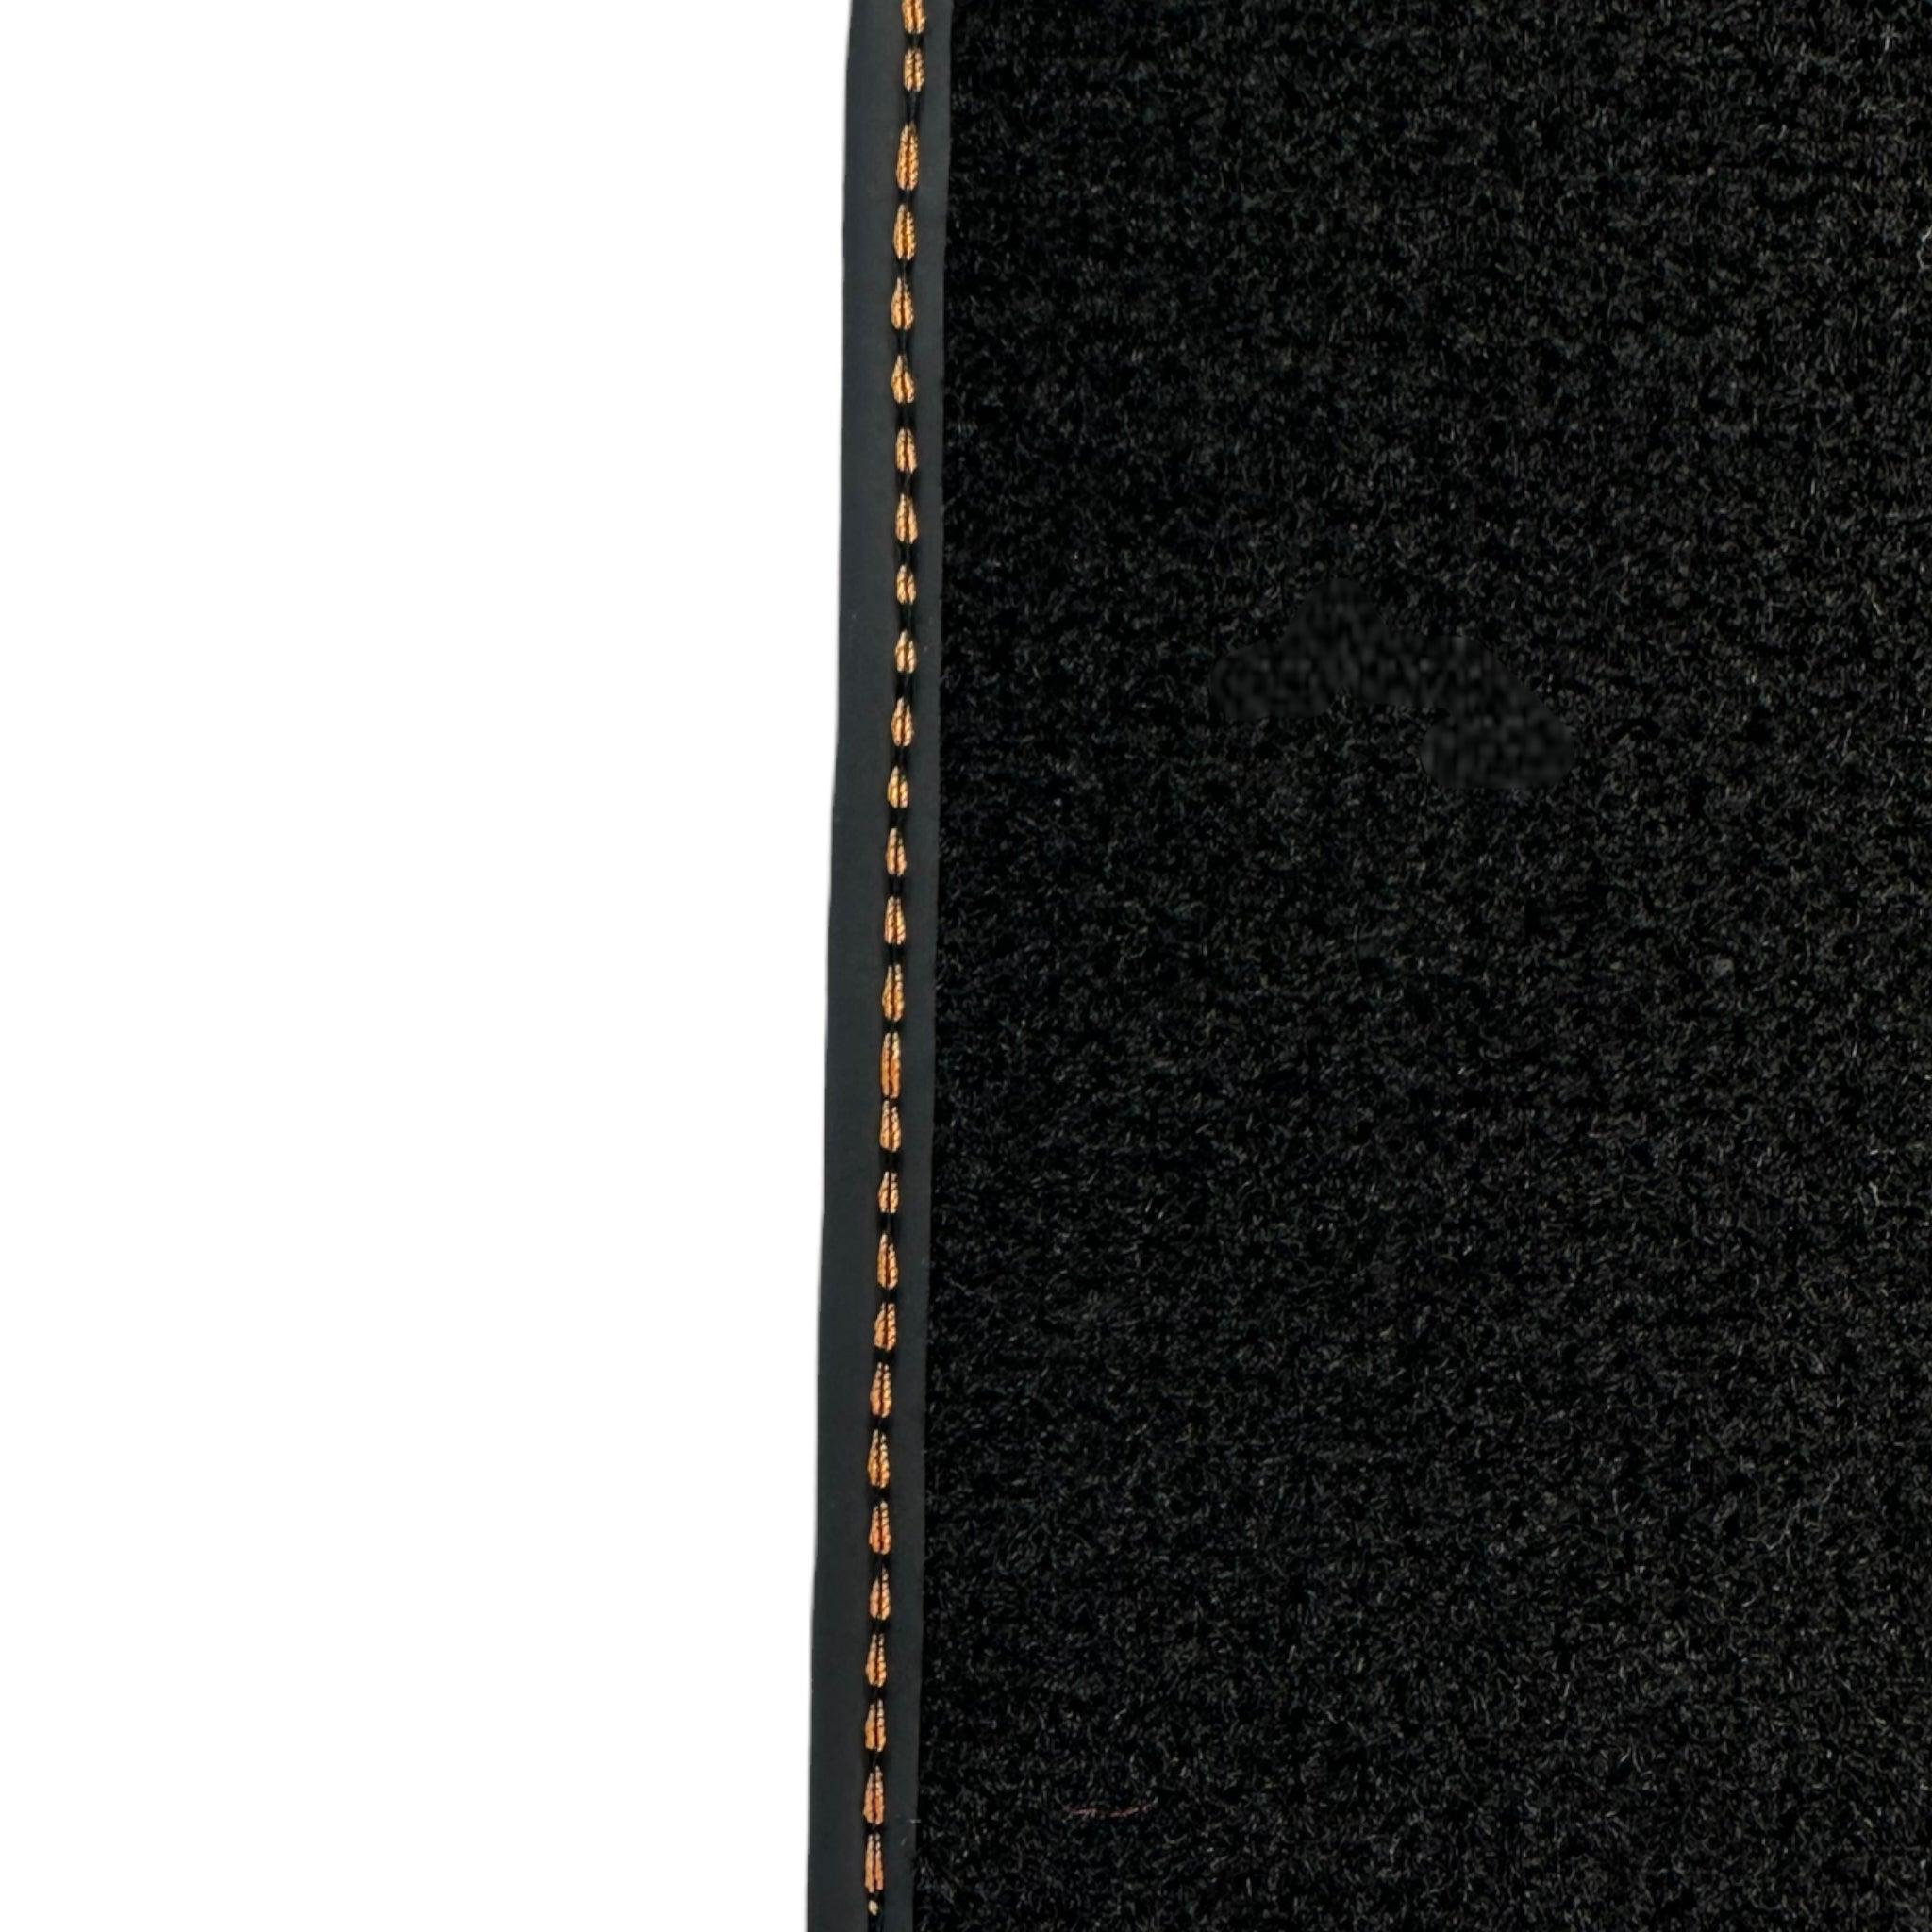 Black Floor Mats for Porsche Macan (2014-2023) with Orange Alcantara Leather ER56 Design - AutoWin